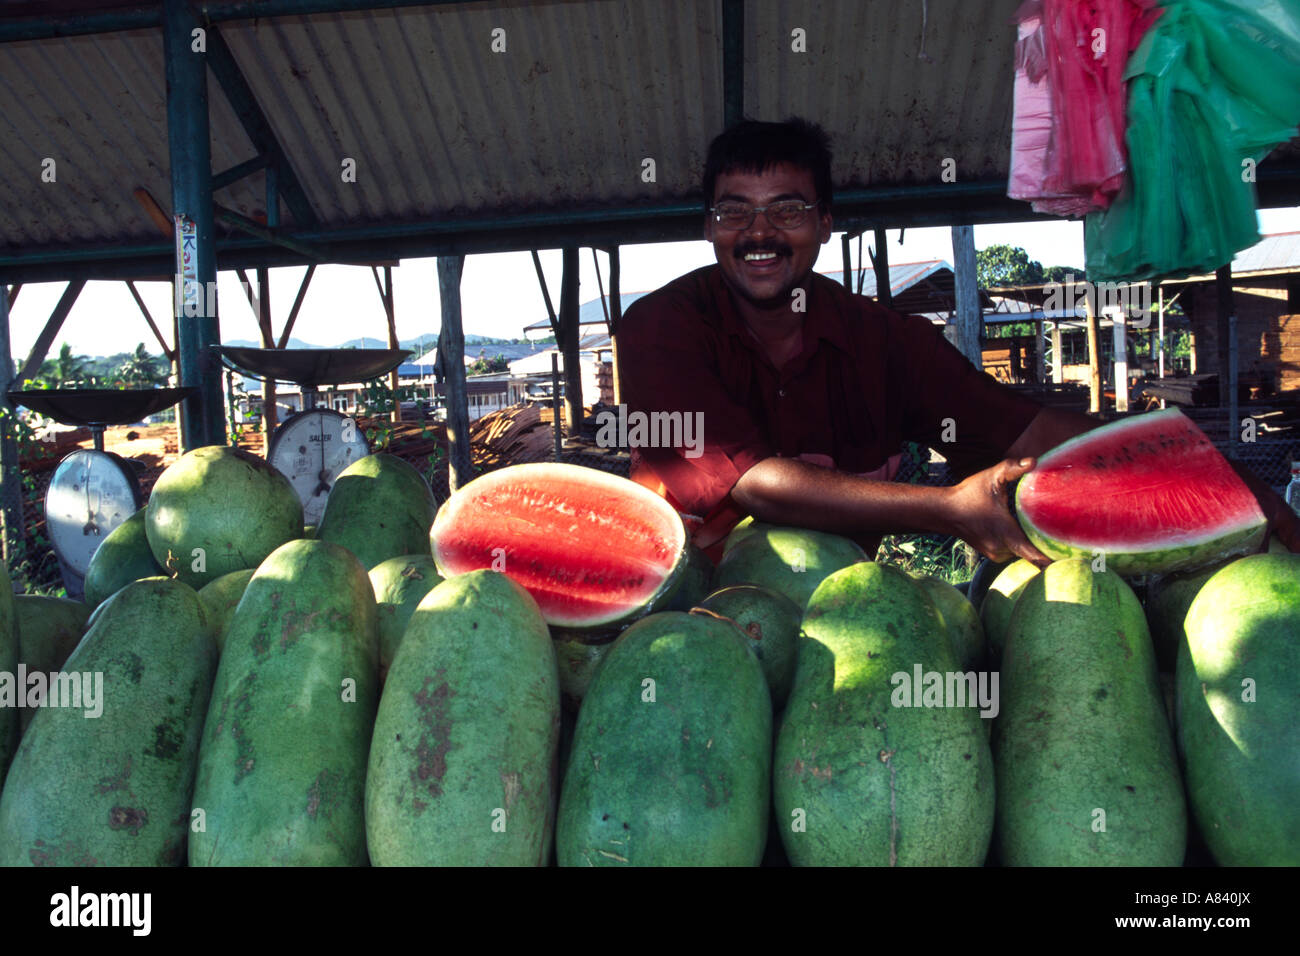 A Fijian man at his market stall, Fiji Stock Photo